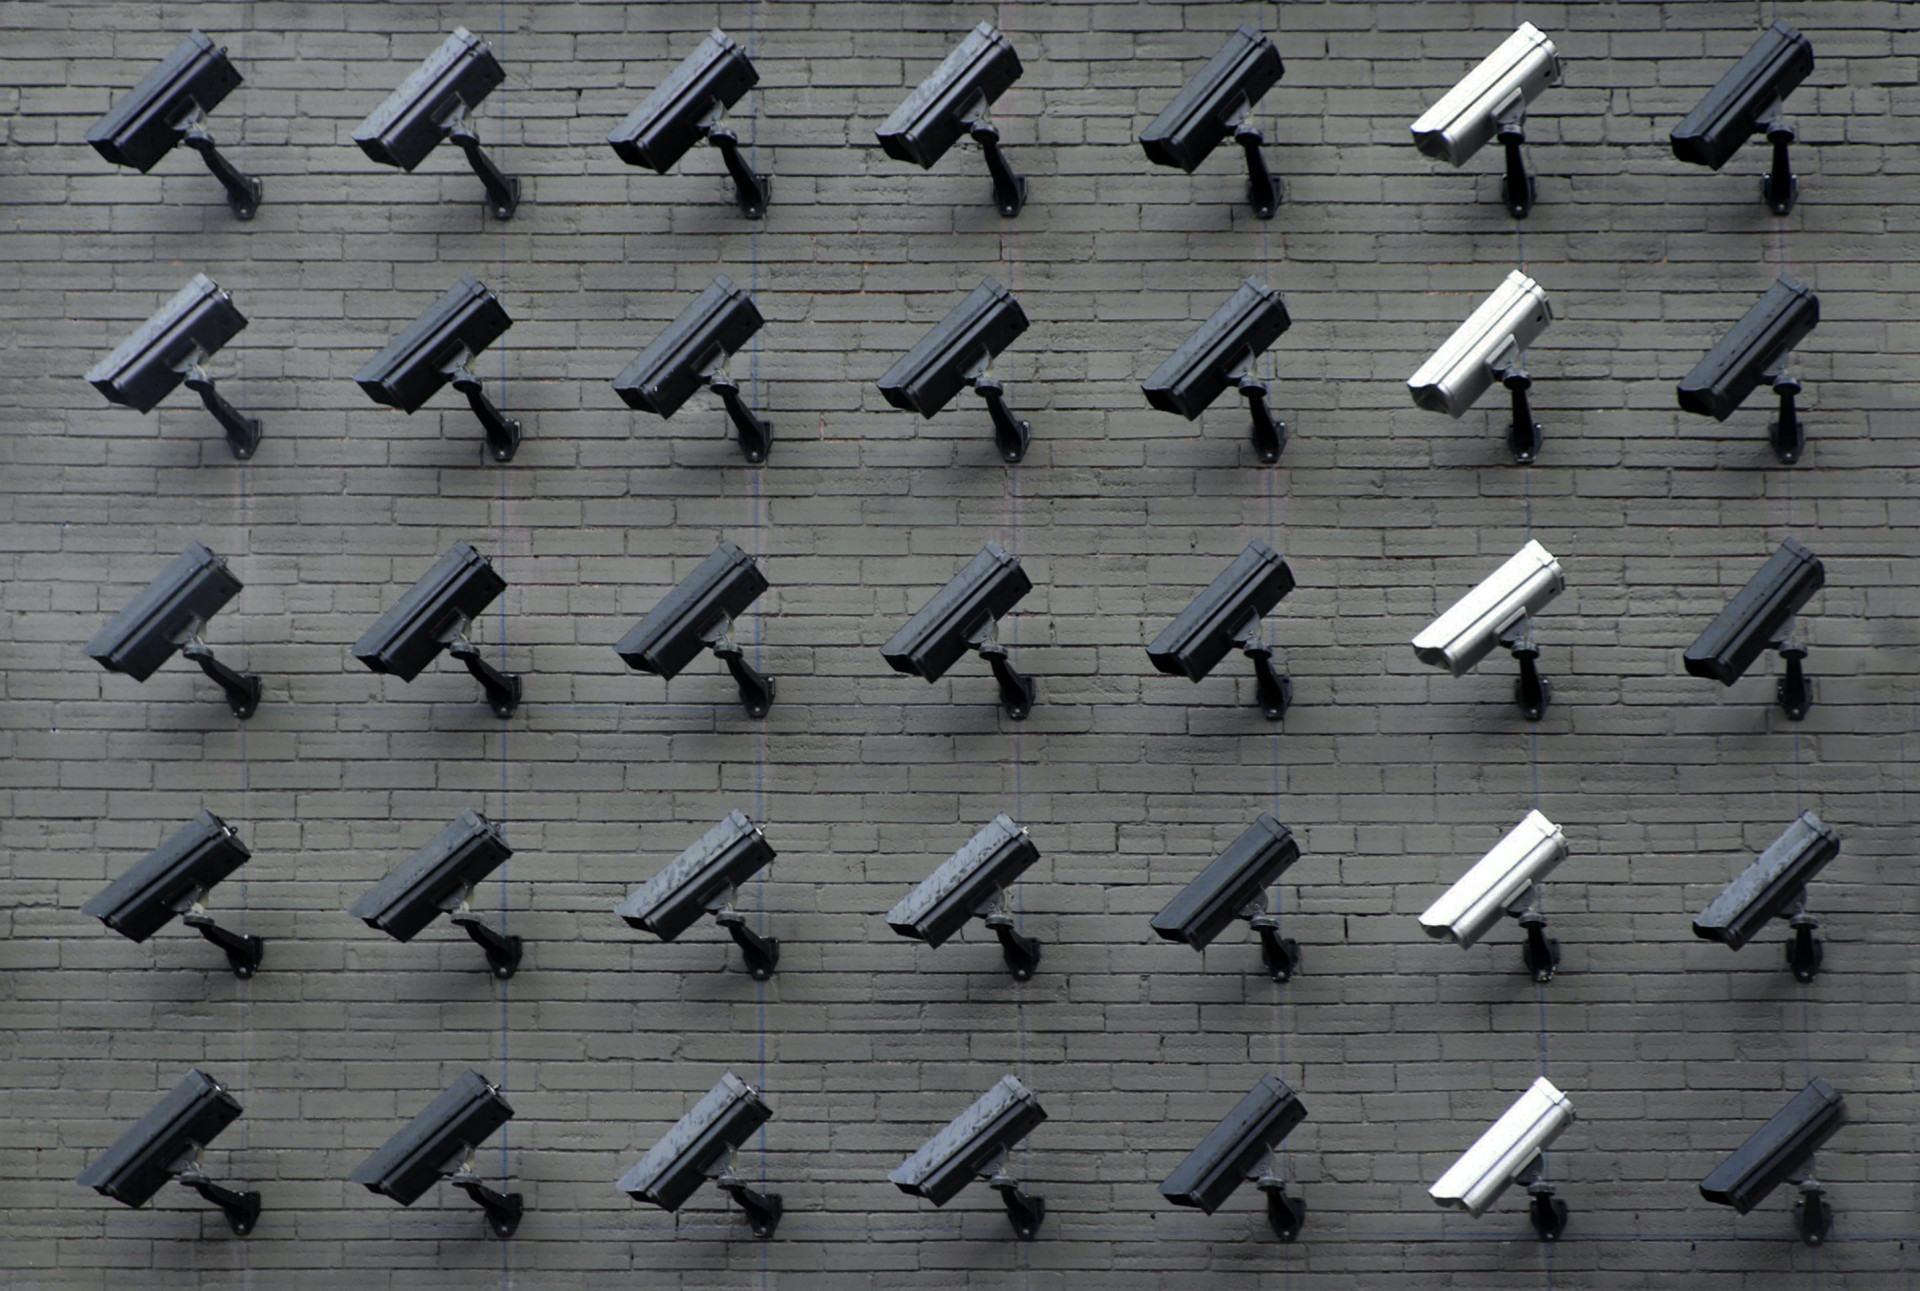 Comment savoir si mes caméras de surveillance fonctionnent vraiment ?